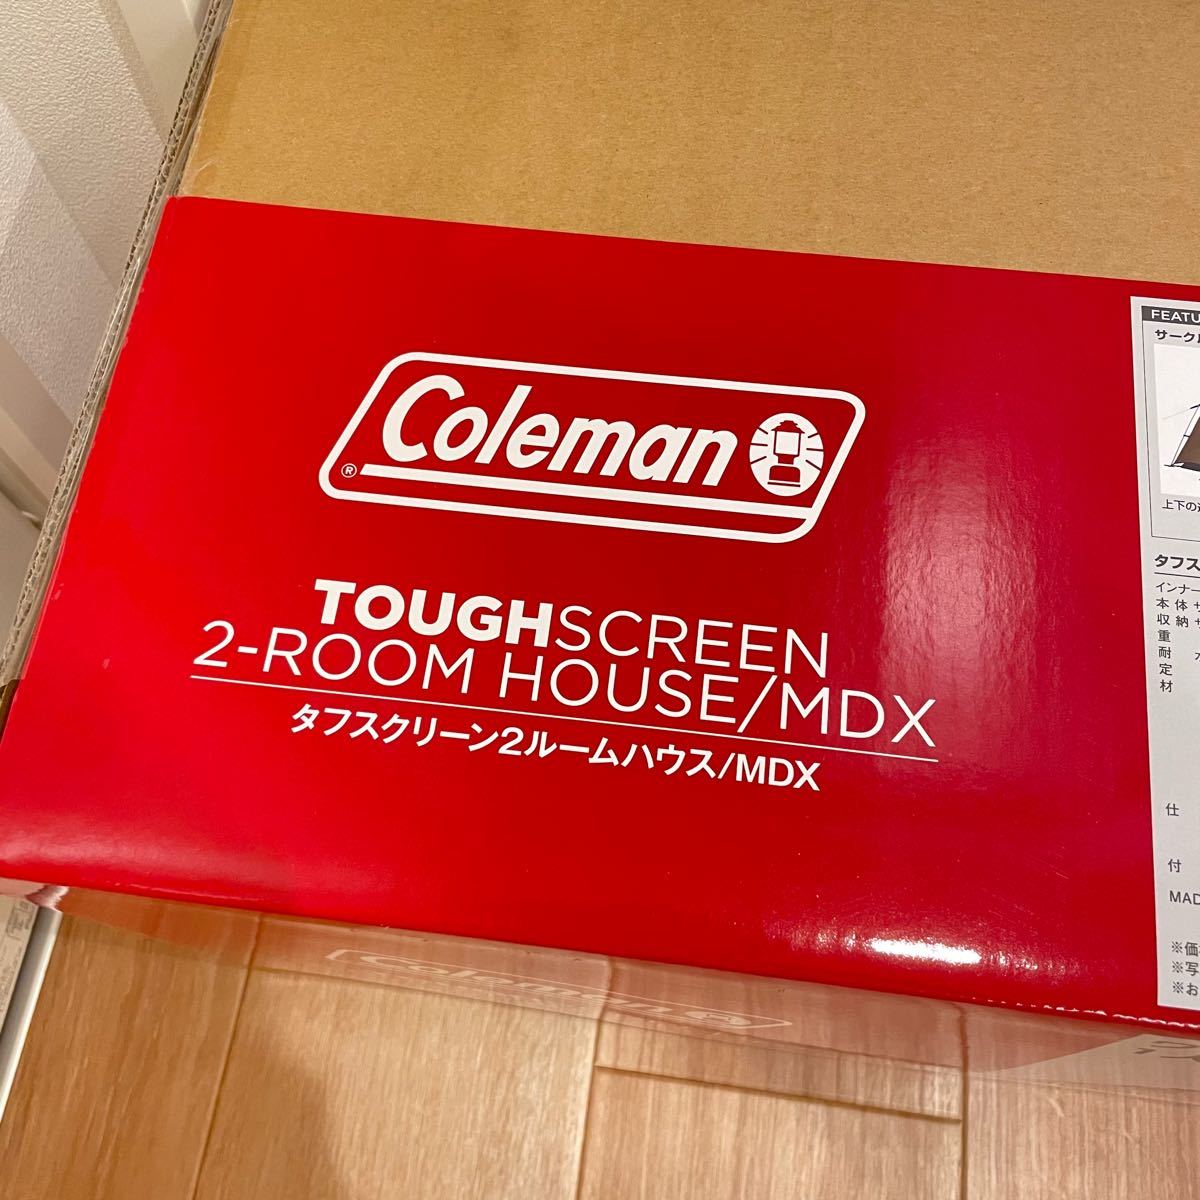 コールマン(Coleman) テント タフスクリーン2ルームハウス MDX 新品未使用